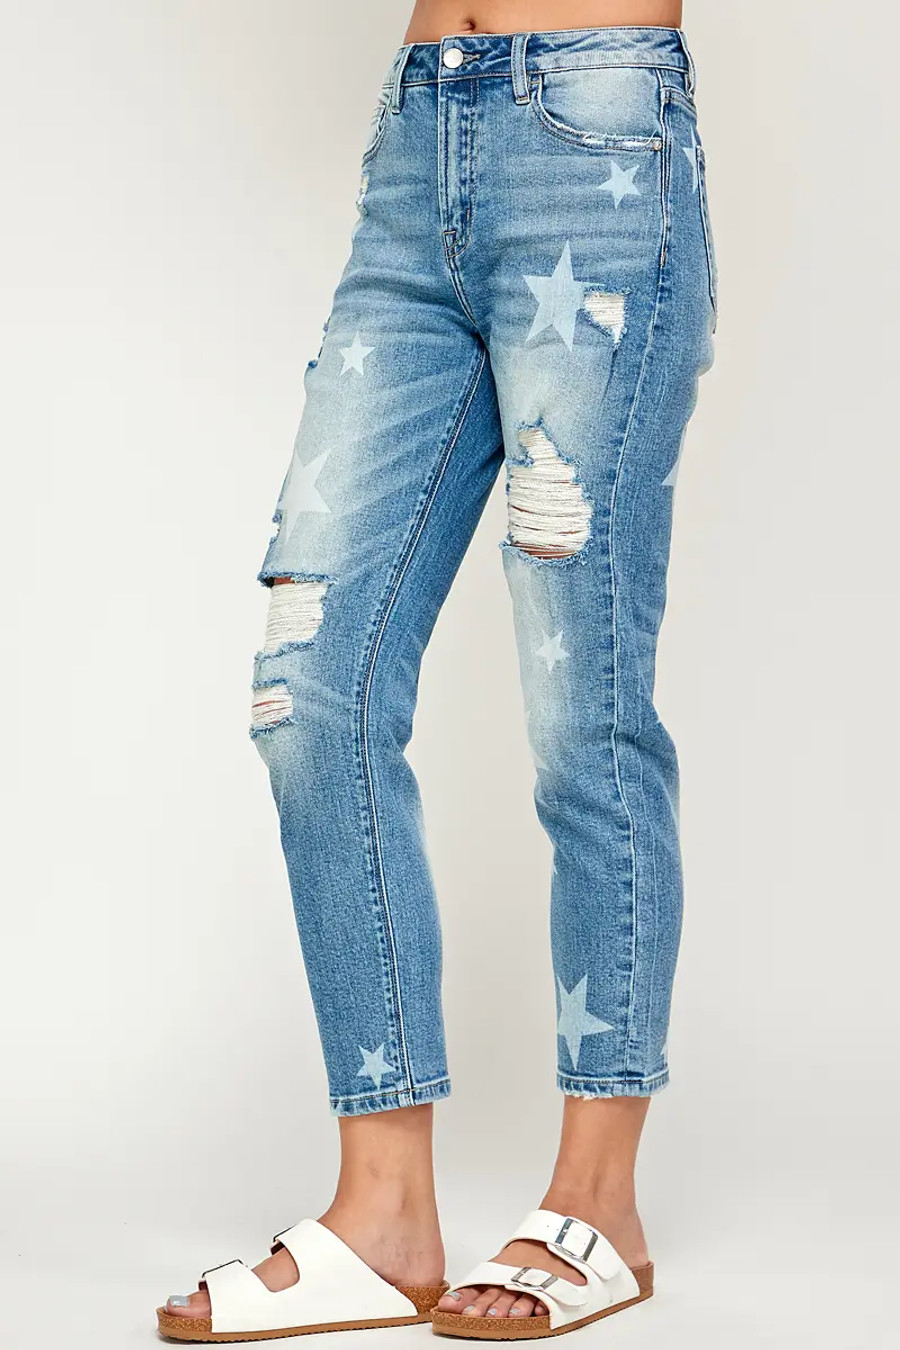 I&M Jeans - Distressed Stretch Mom Jeans w/ Stars - Medium Wash